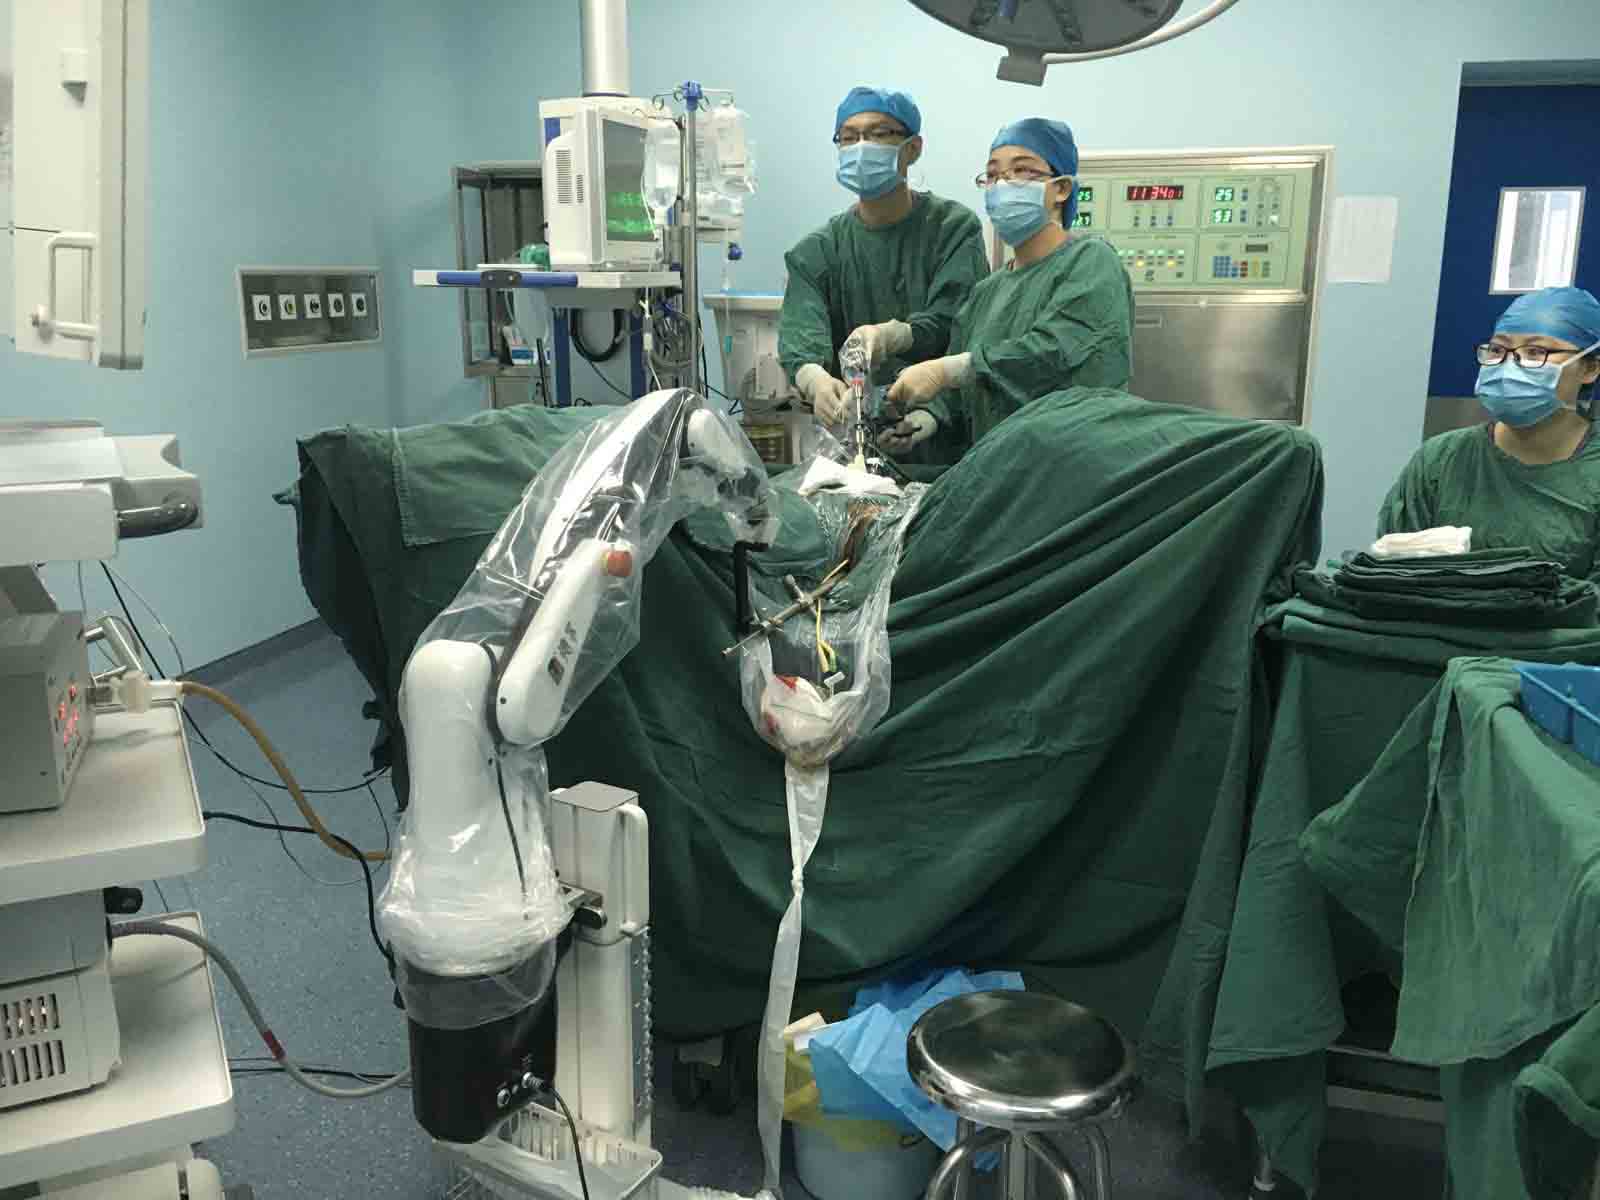 德易内镜机器人在妇科、普外科(甲状腺）、耳鼻喉科、泌尿外科的广泛应用